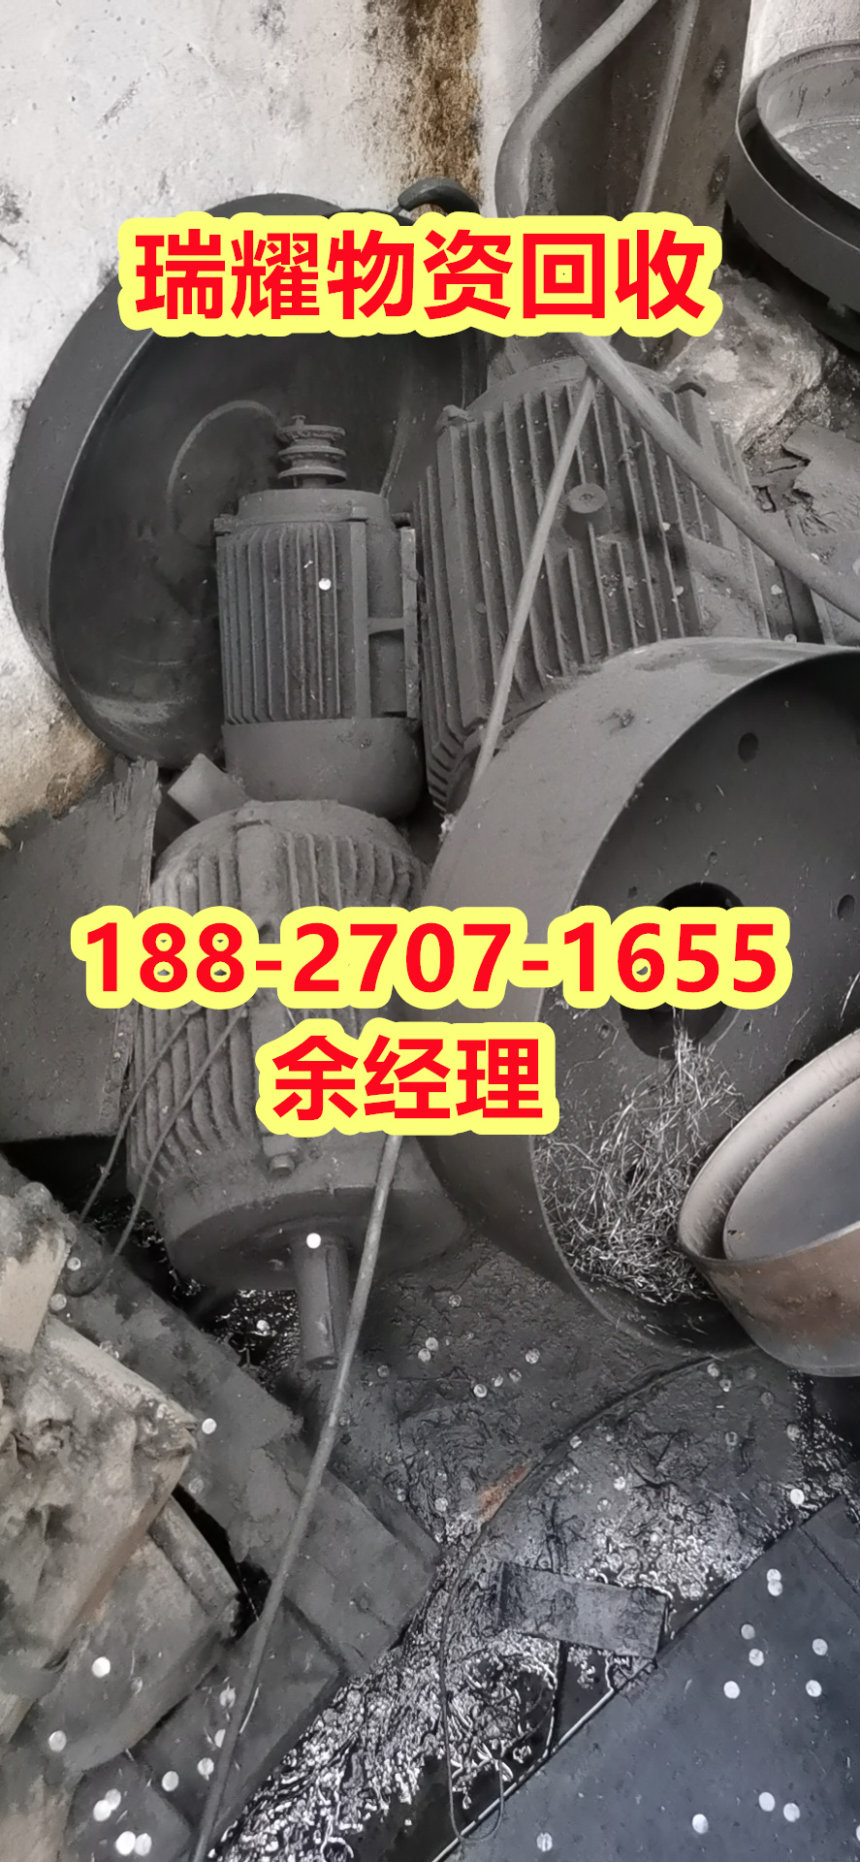 咸丰县废旧电机回收-瑞耀物资回收近期报价